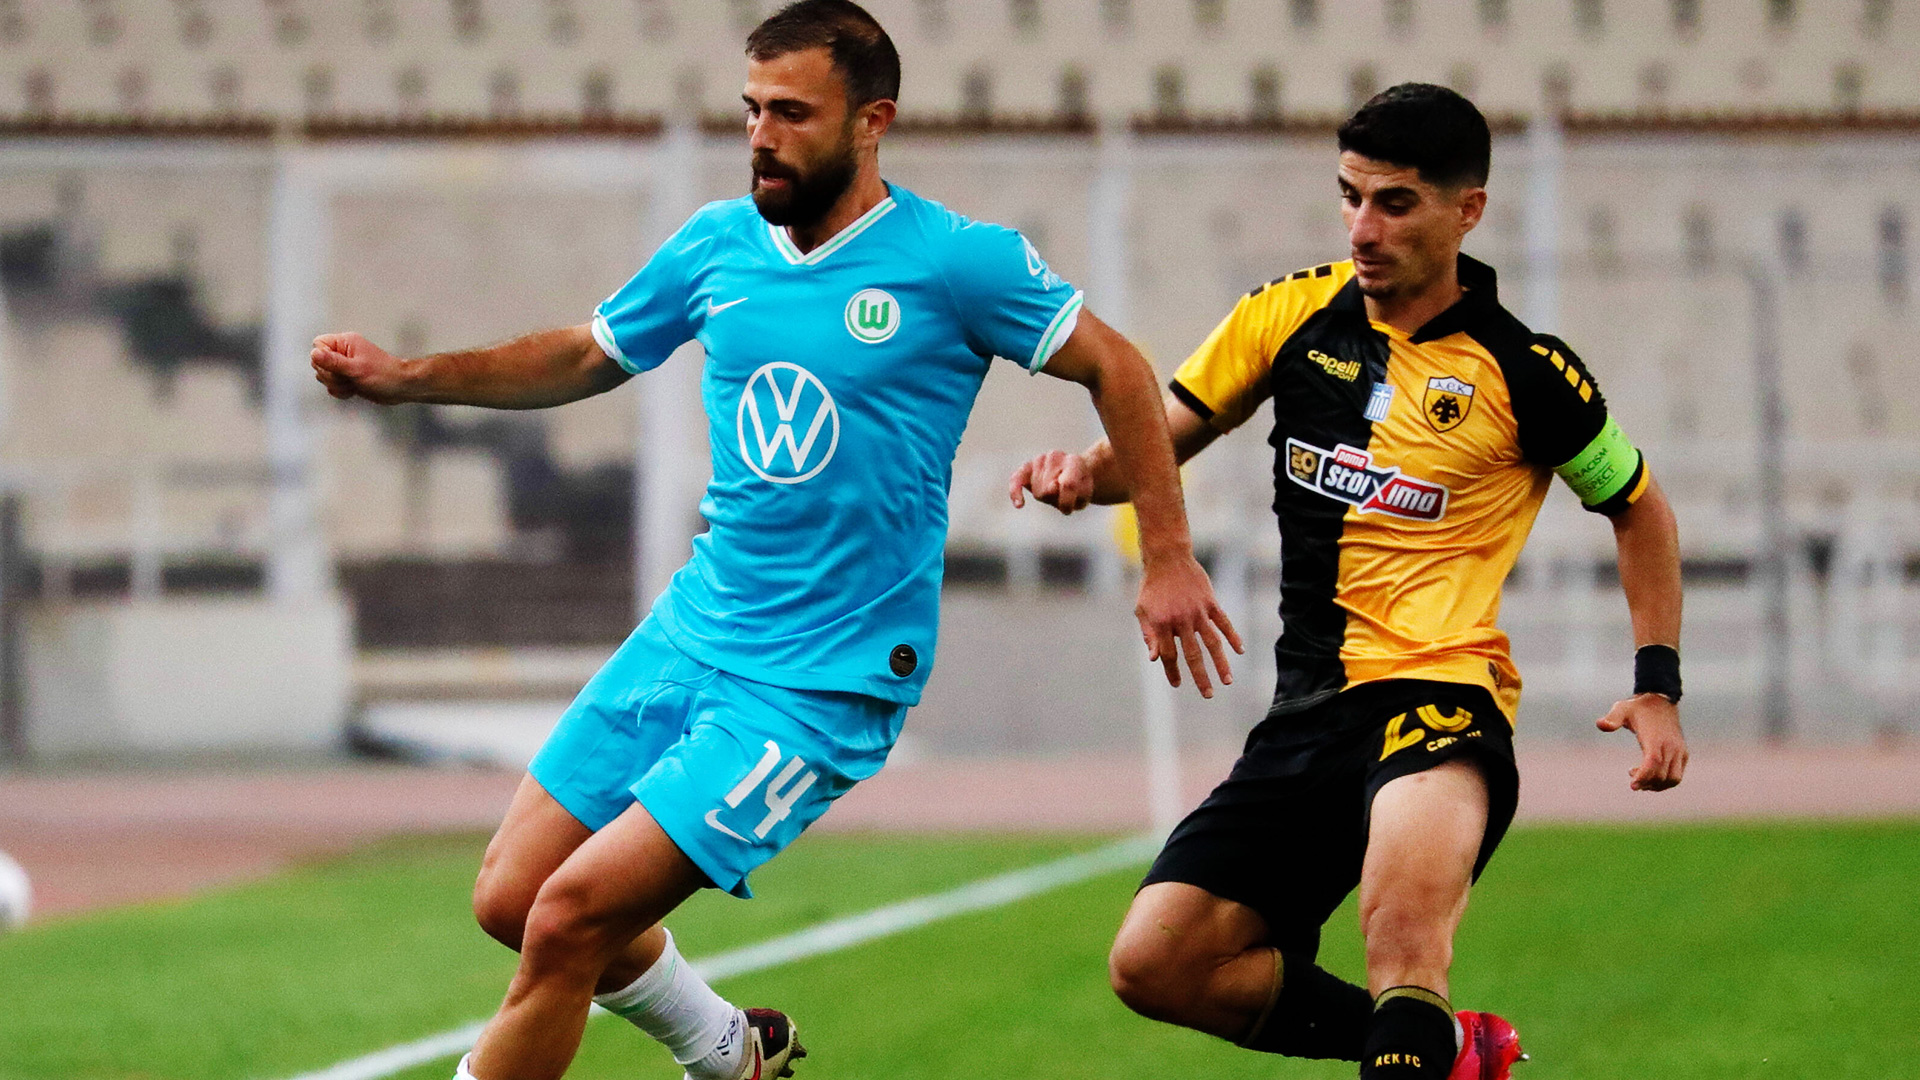 Admir Mehmedi im Zweikampf gegen einen Spieler von AEK Athen.